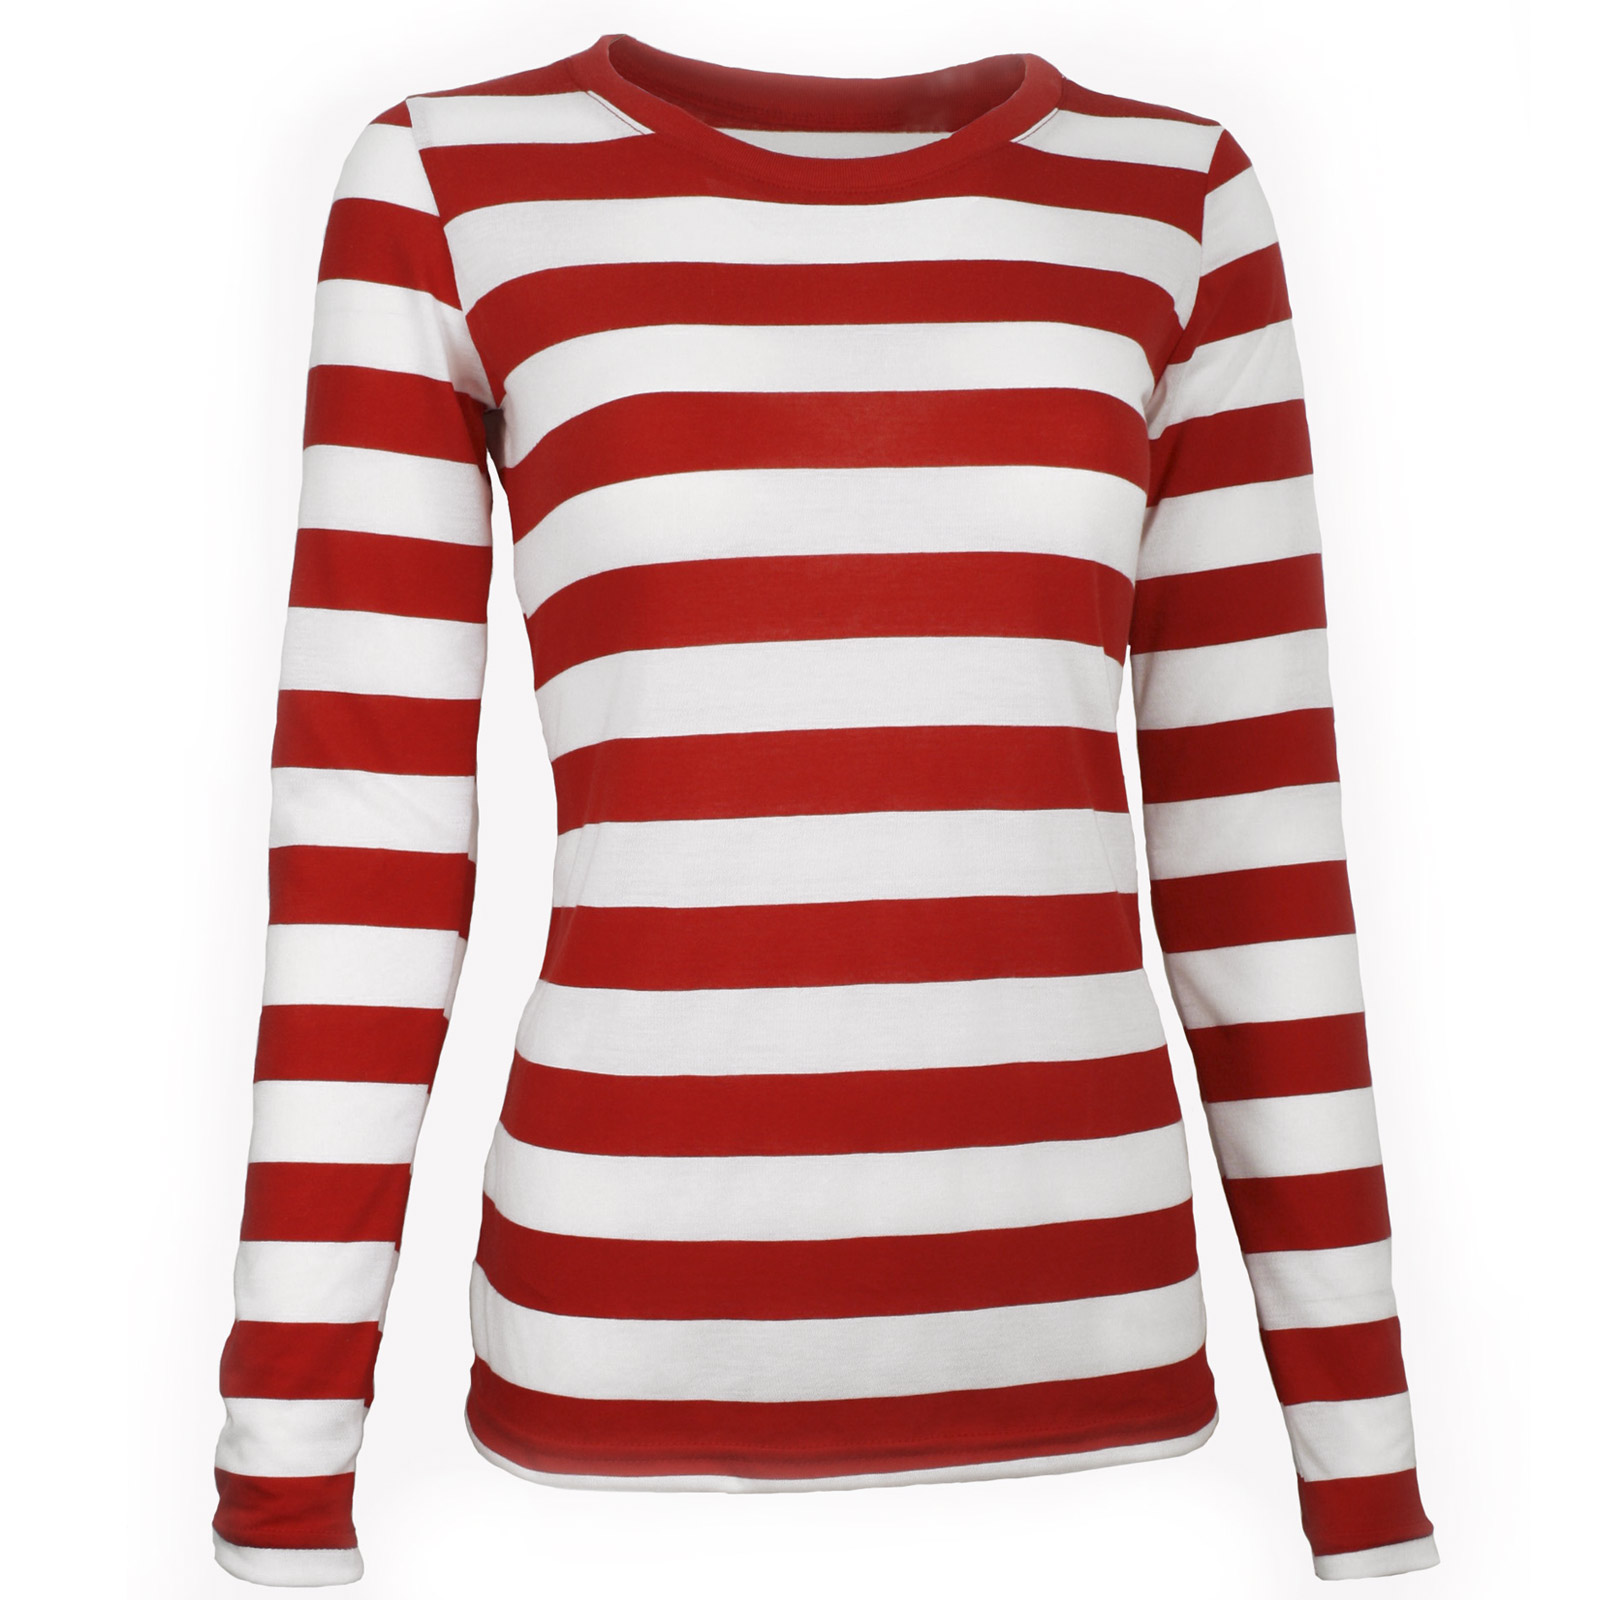 Long Sleeve Stripe Striped Shirt RED White Waldo Women's XS S M L XL ...